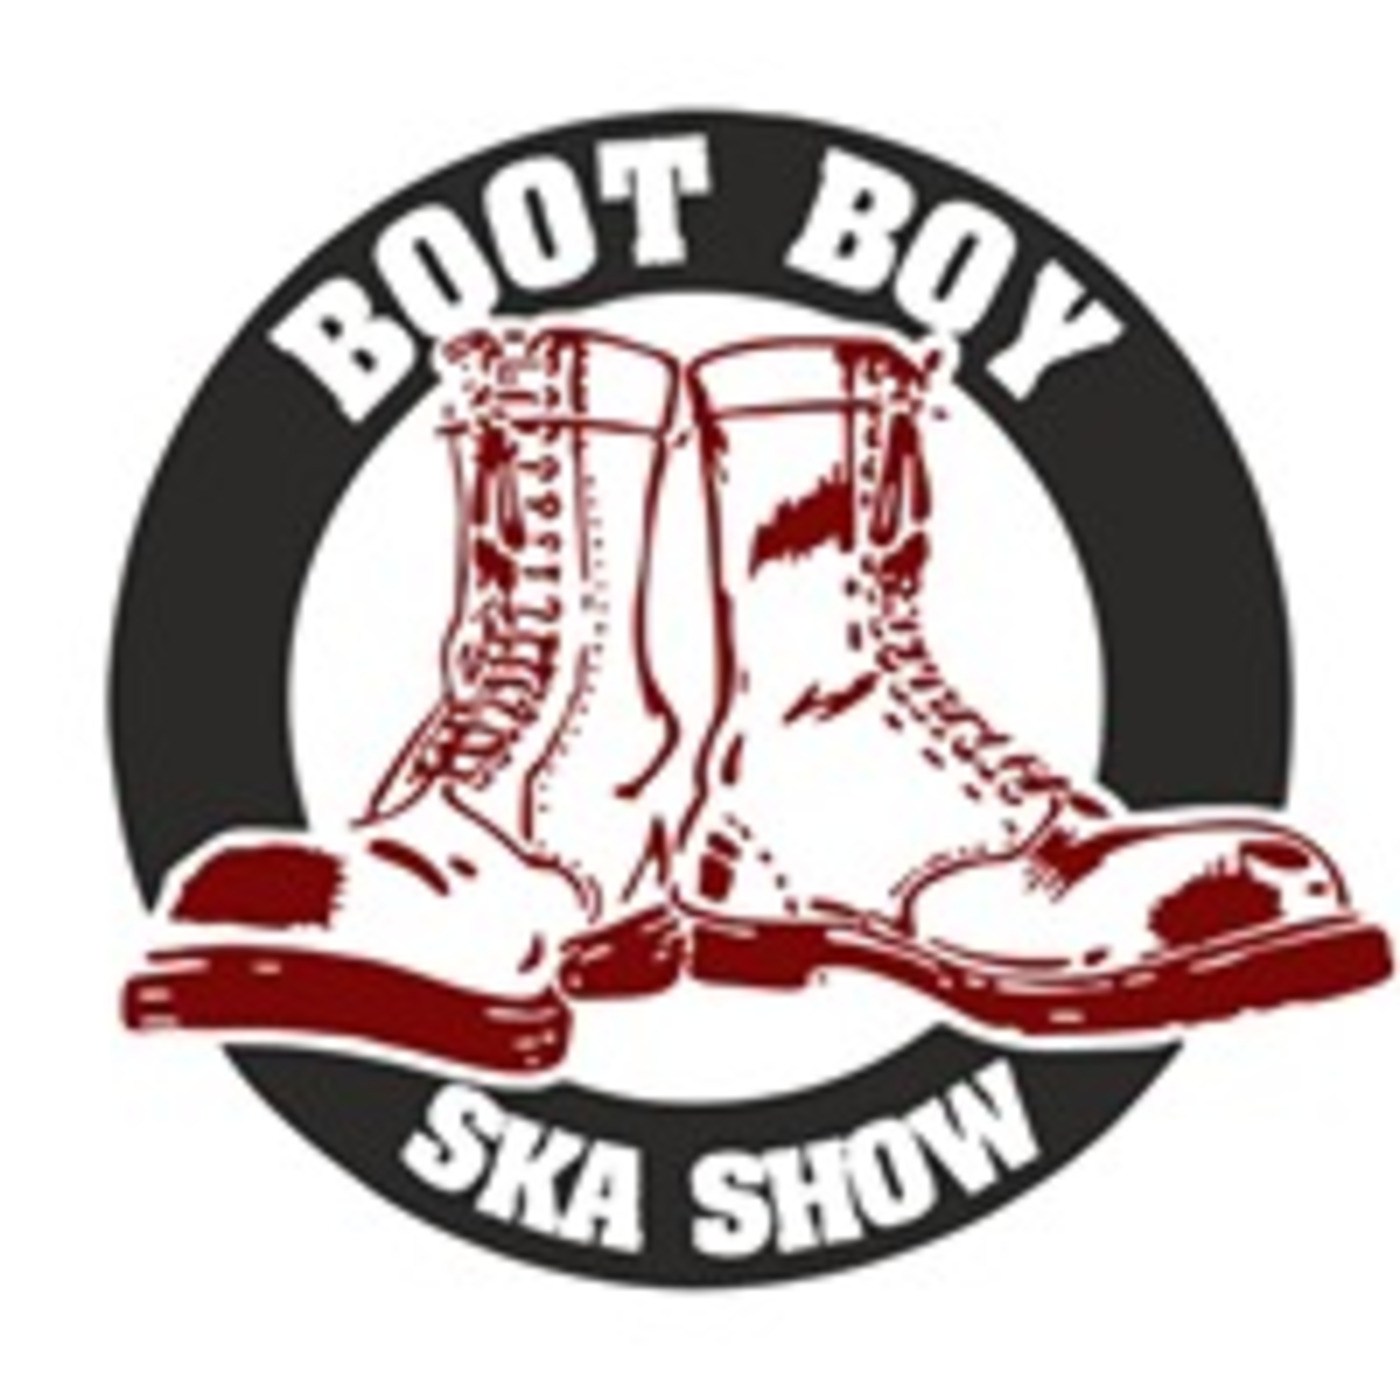 Episode 2533: The Boot Boy Ska Show With Geoff Longbar 29th July 2022 On www.bootboyradio.net